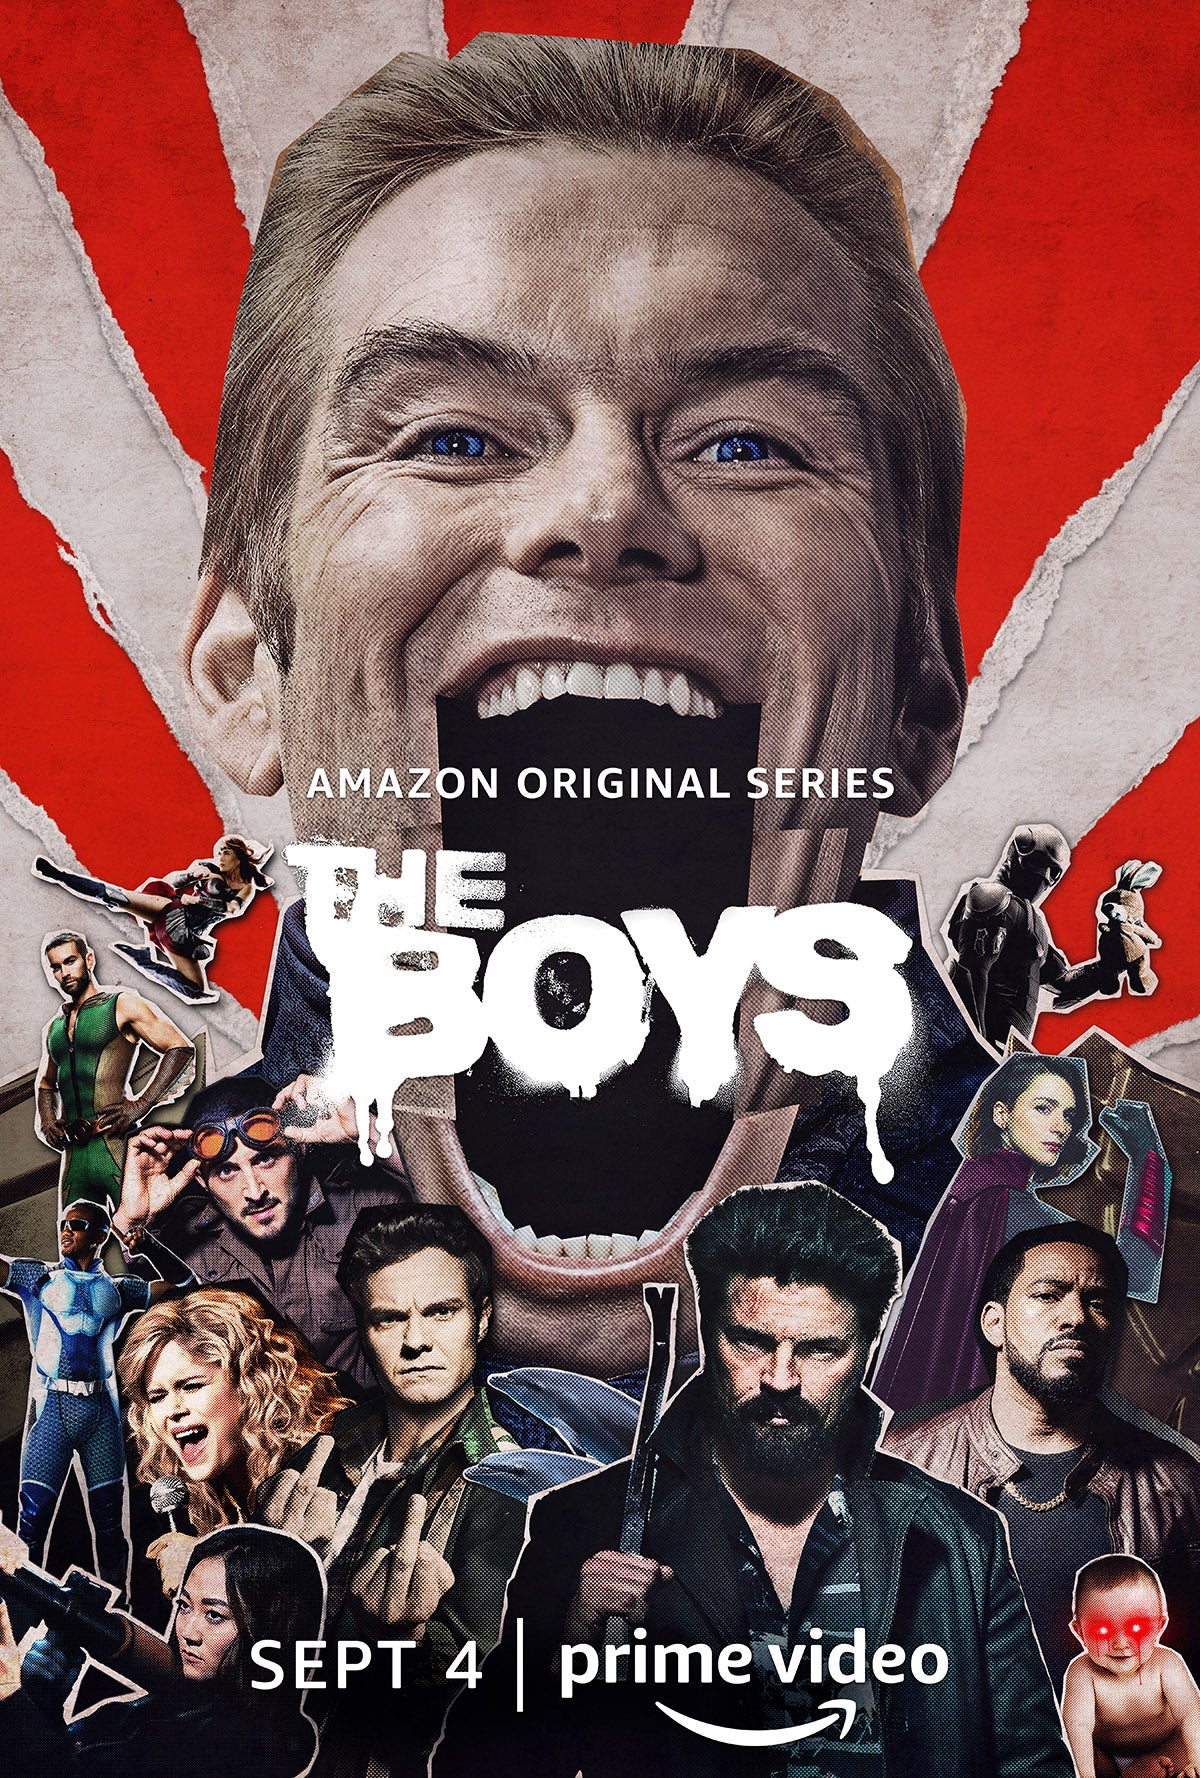 New Full Trailer for 'The Boys' Season 2